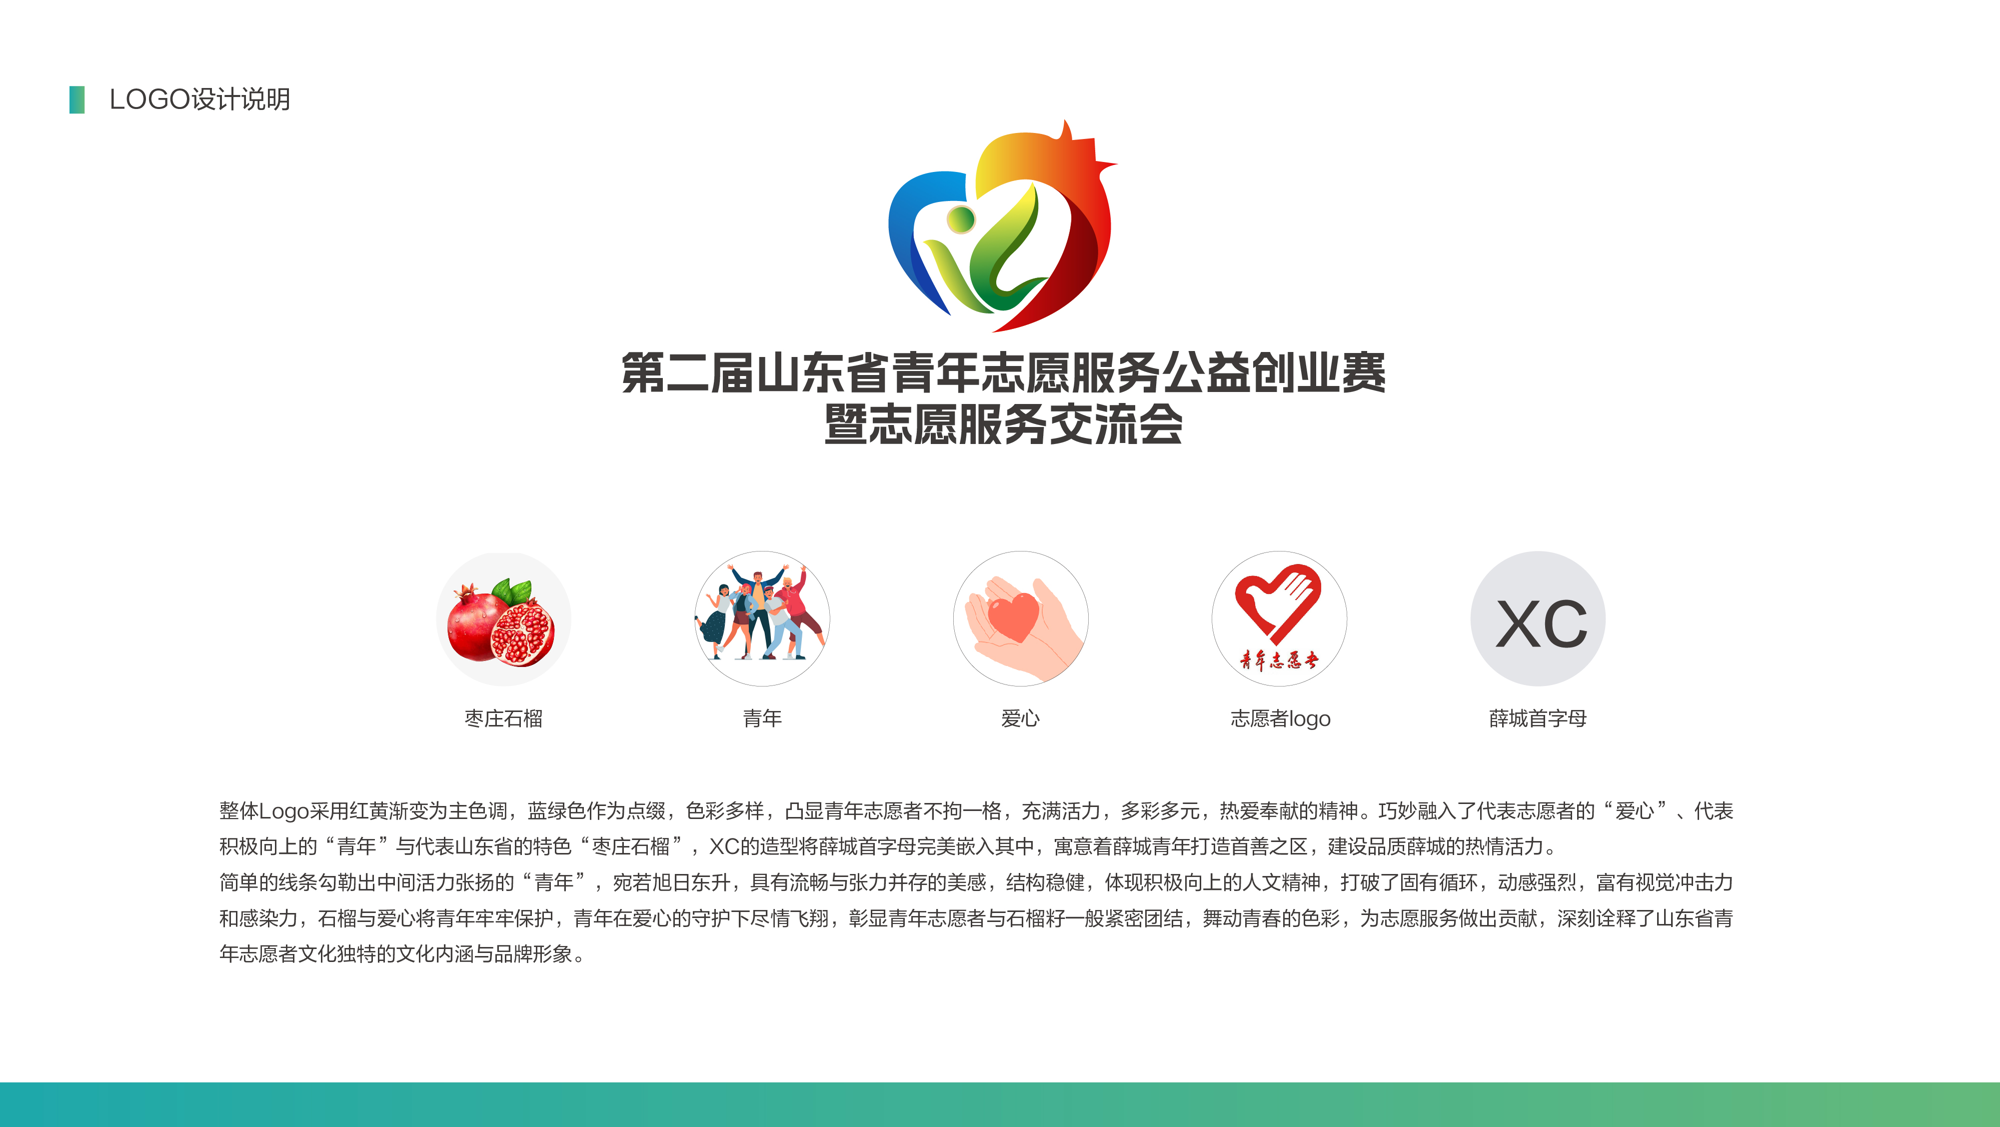 山东省青年志愿服务公益创业大赛吉祥物和logo 寓意薛城青年的乐善与